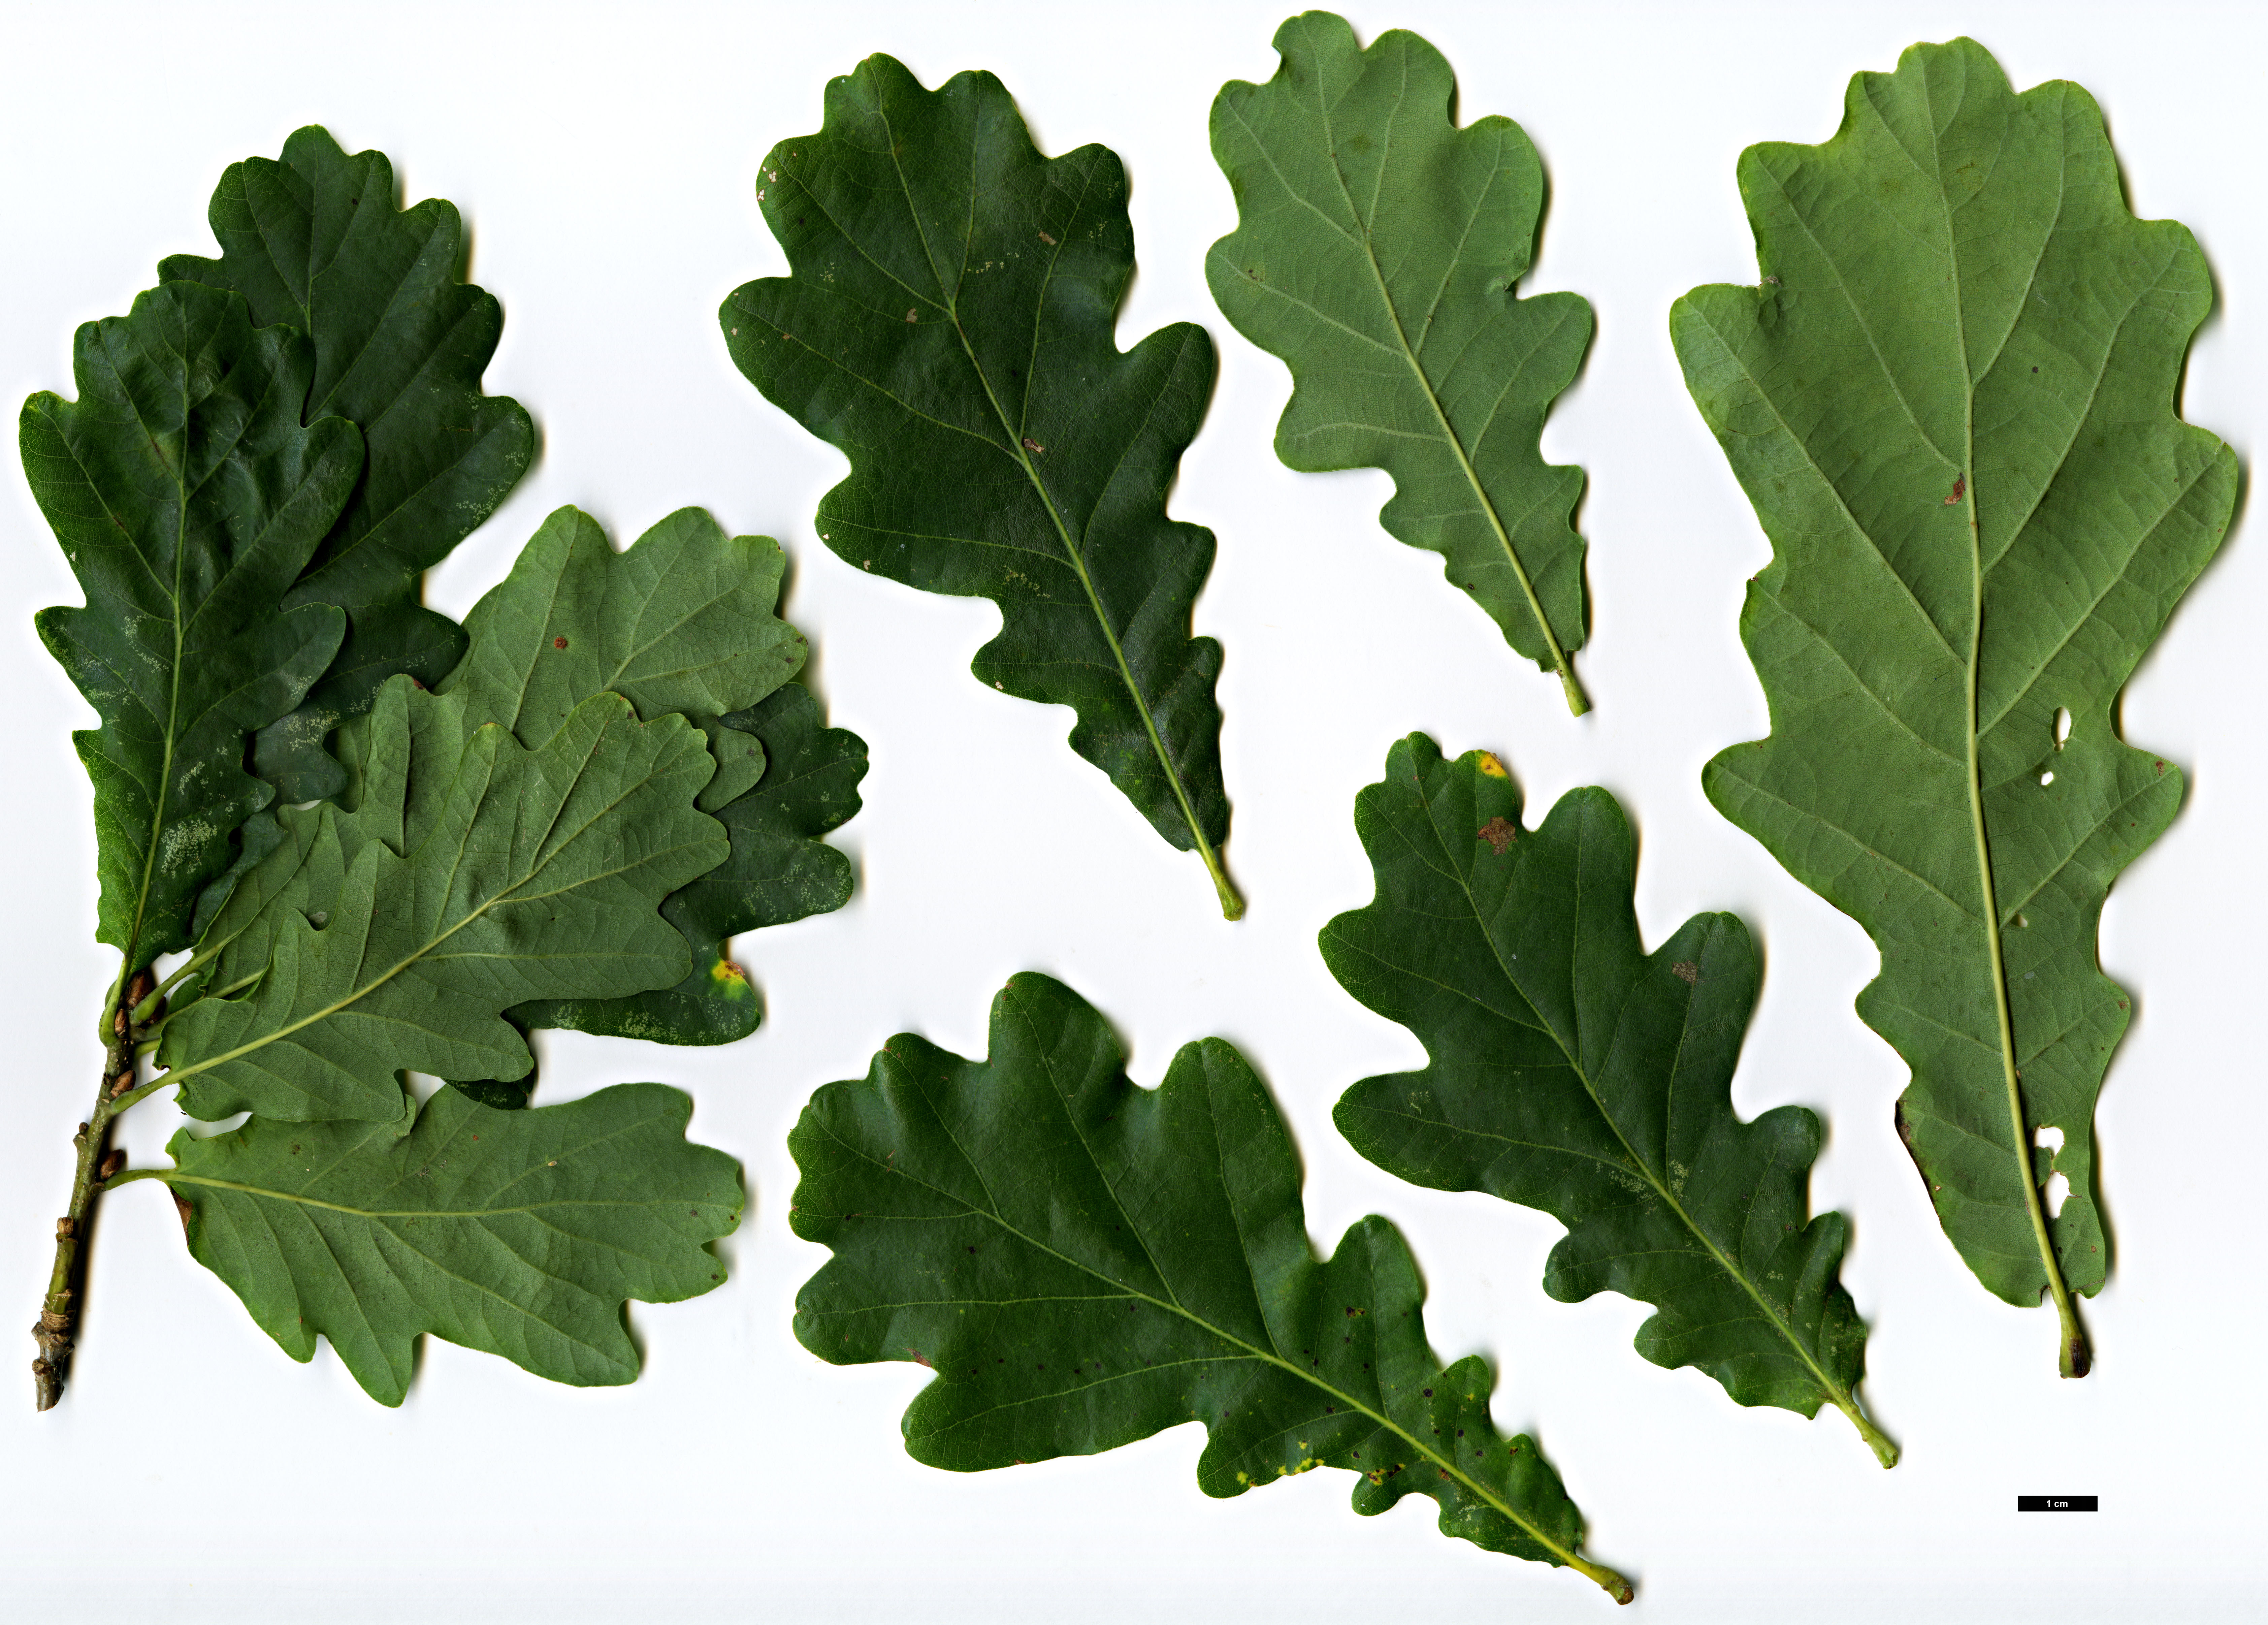 High resolution image: Family: Fagaceae - Genus: Quercus - Taxon: robur - SpeciesSub: Fastigiata Group 'Totem'